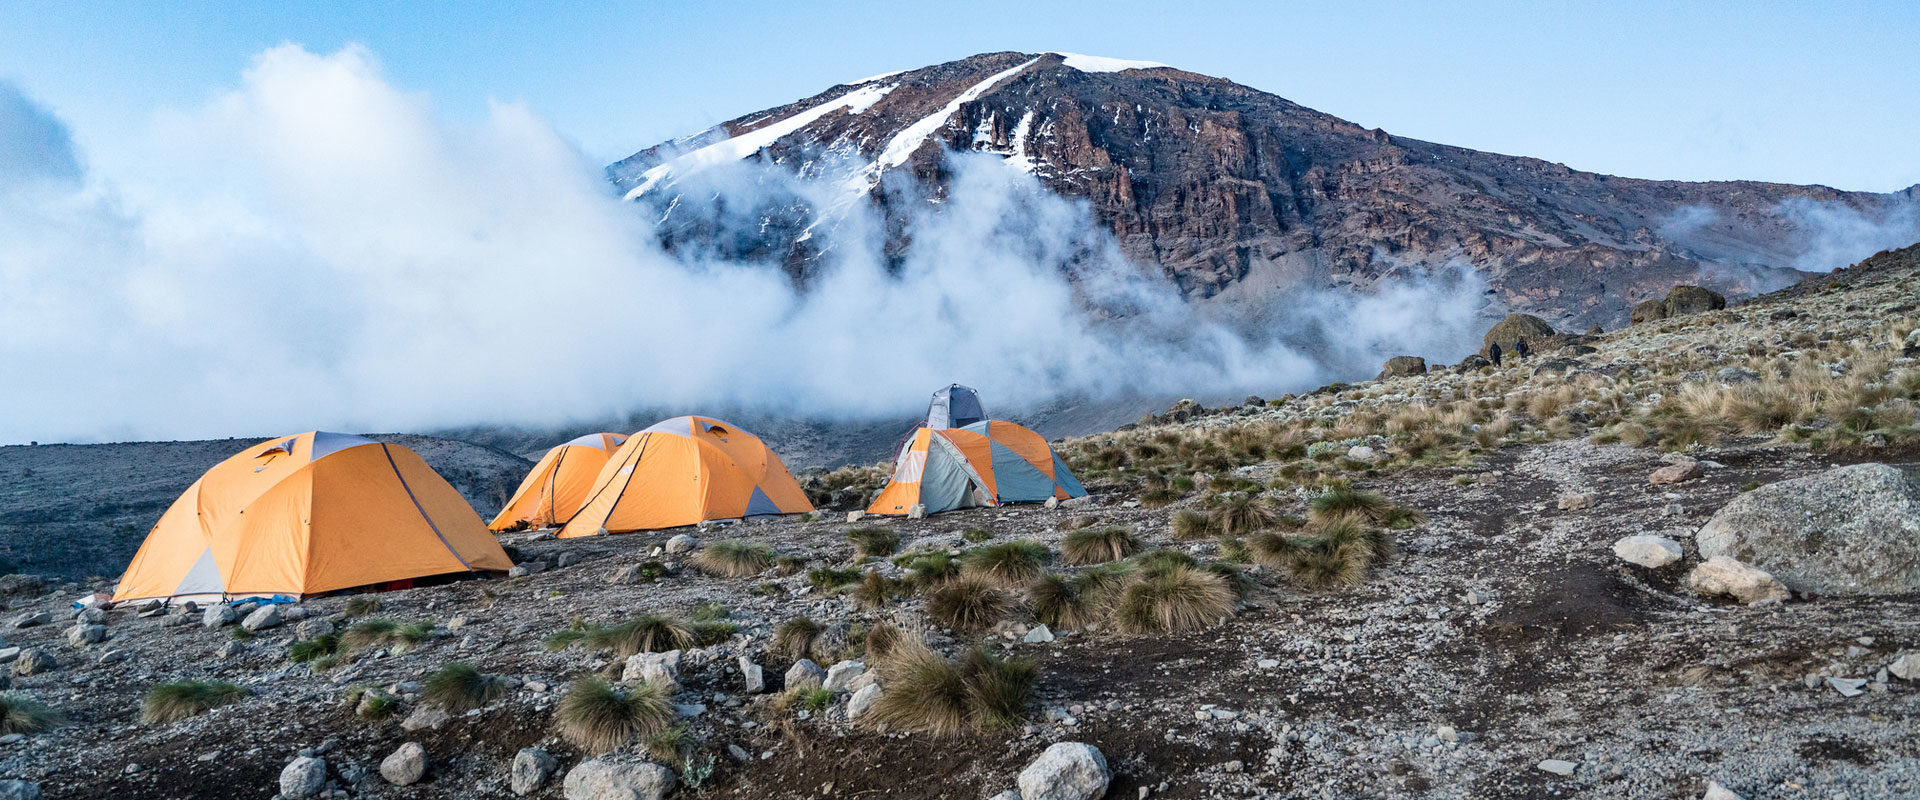 Mountain Tents, Sleeping Tents for Mount Kilimanjaro & Mount Kenya